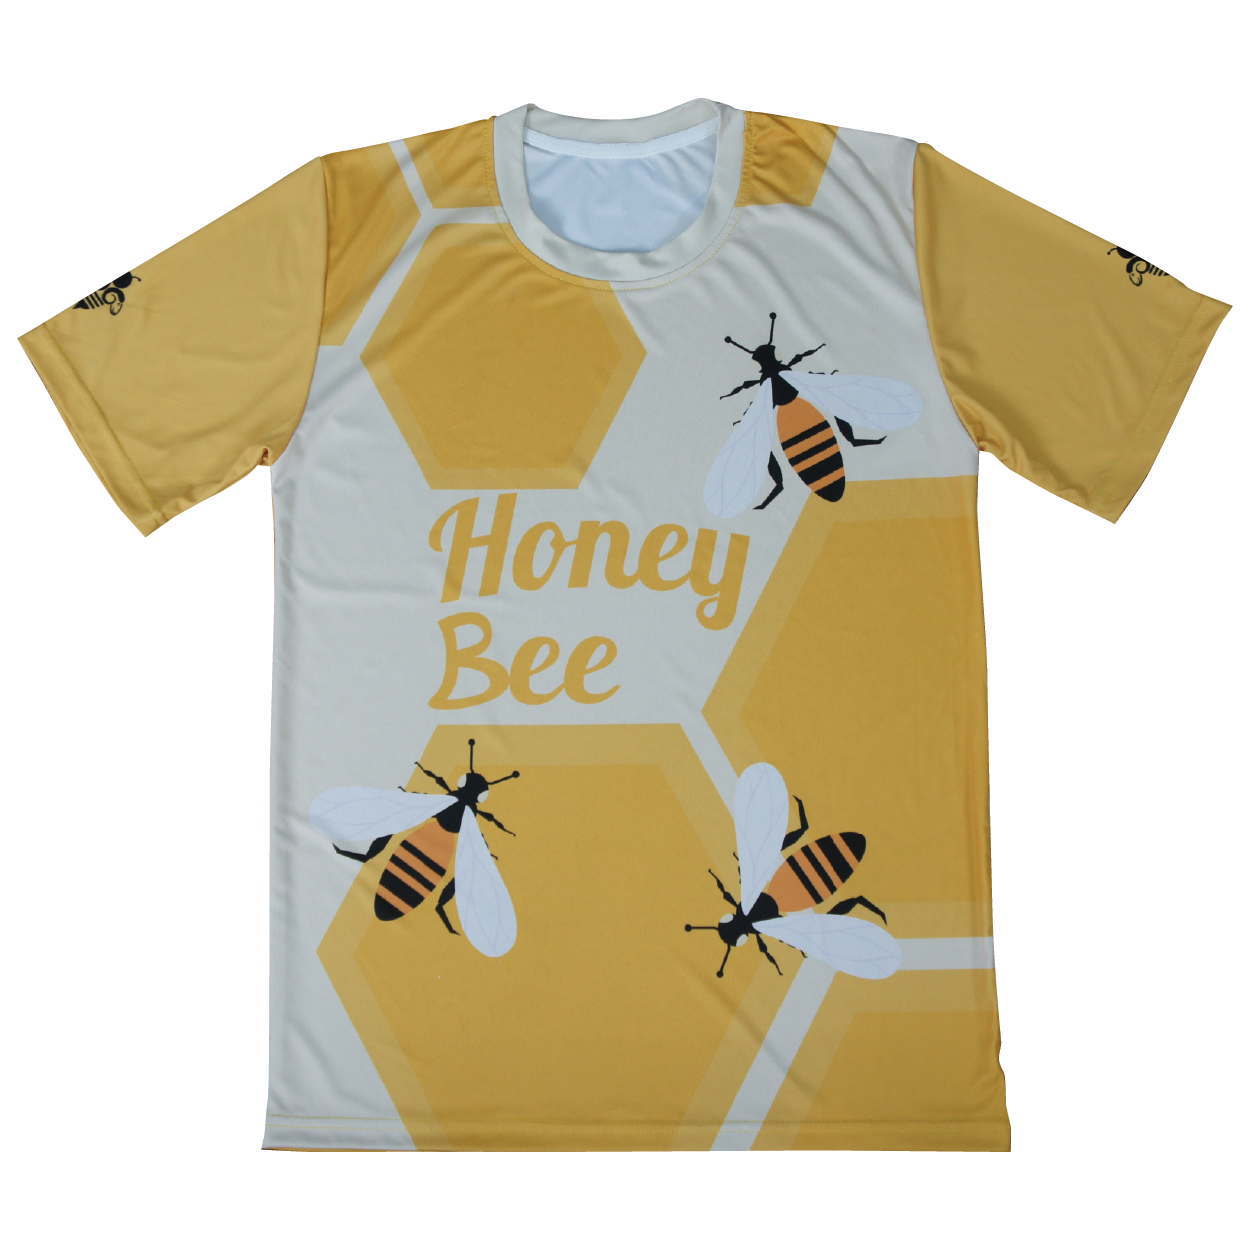 เสื้อฟุตบอลพิมพ์ลายด้านหน้า มีลายผึ้งหกเหลี่ยมสีส้มขาว พิมพ์ชื่อด้านหน้า